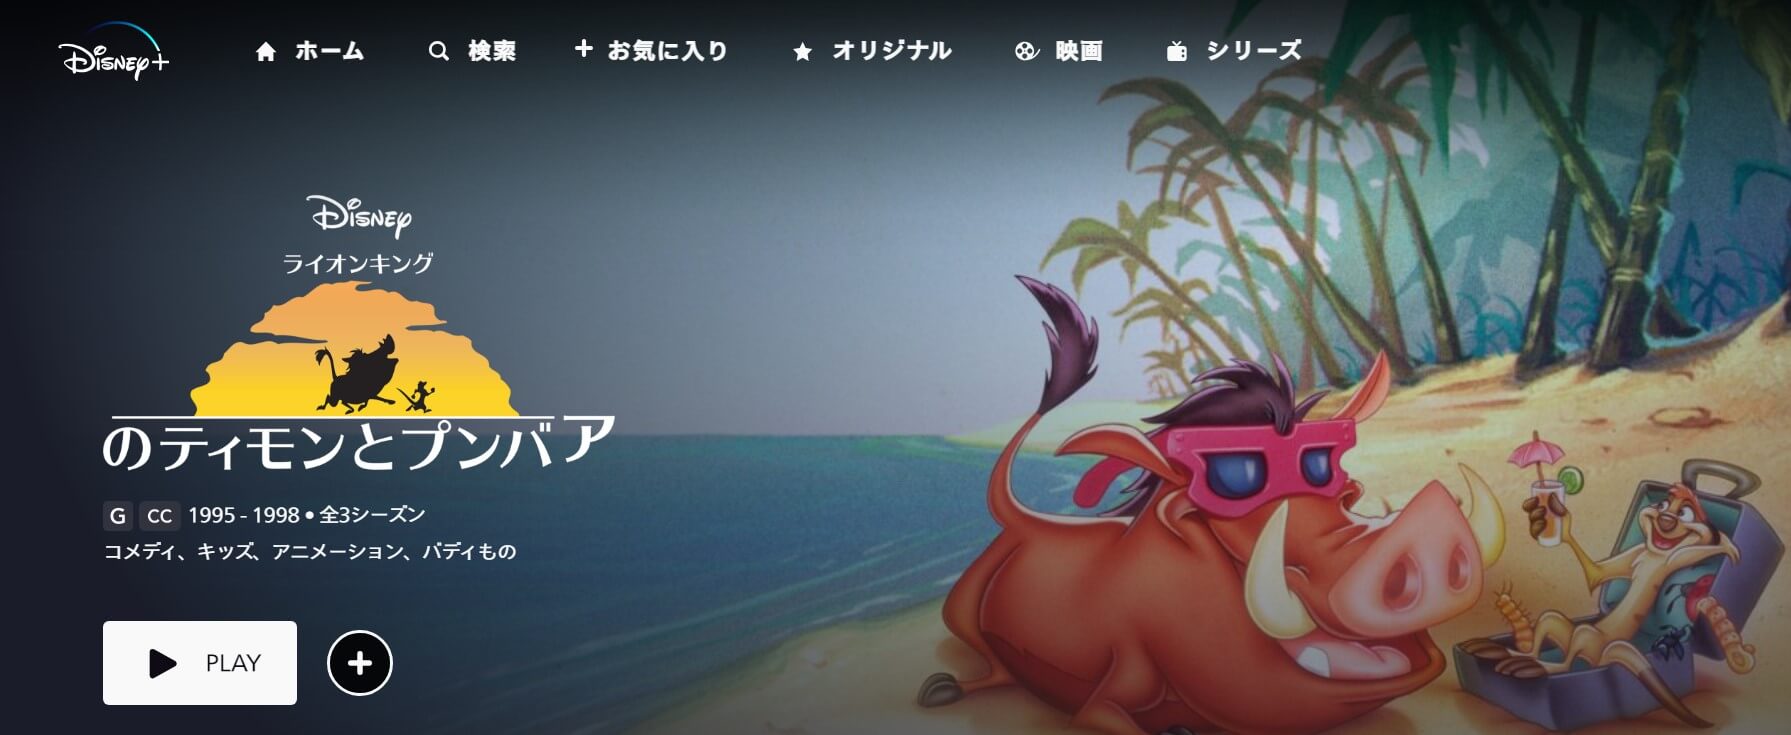 アニメ『ライオン・キングのティモンとプンバァ』ディズニープラスホーム画像